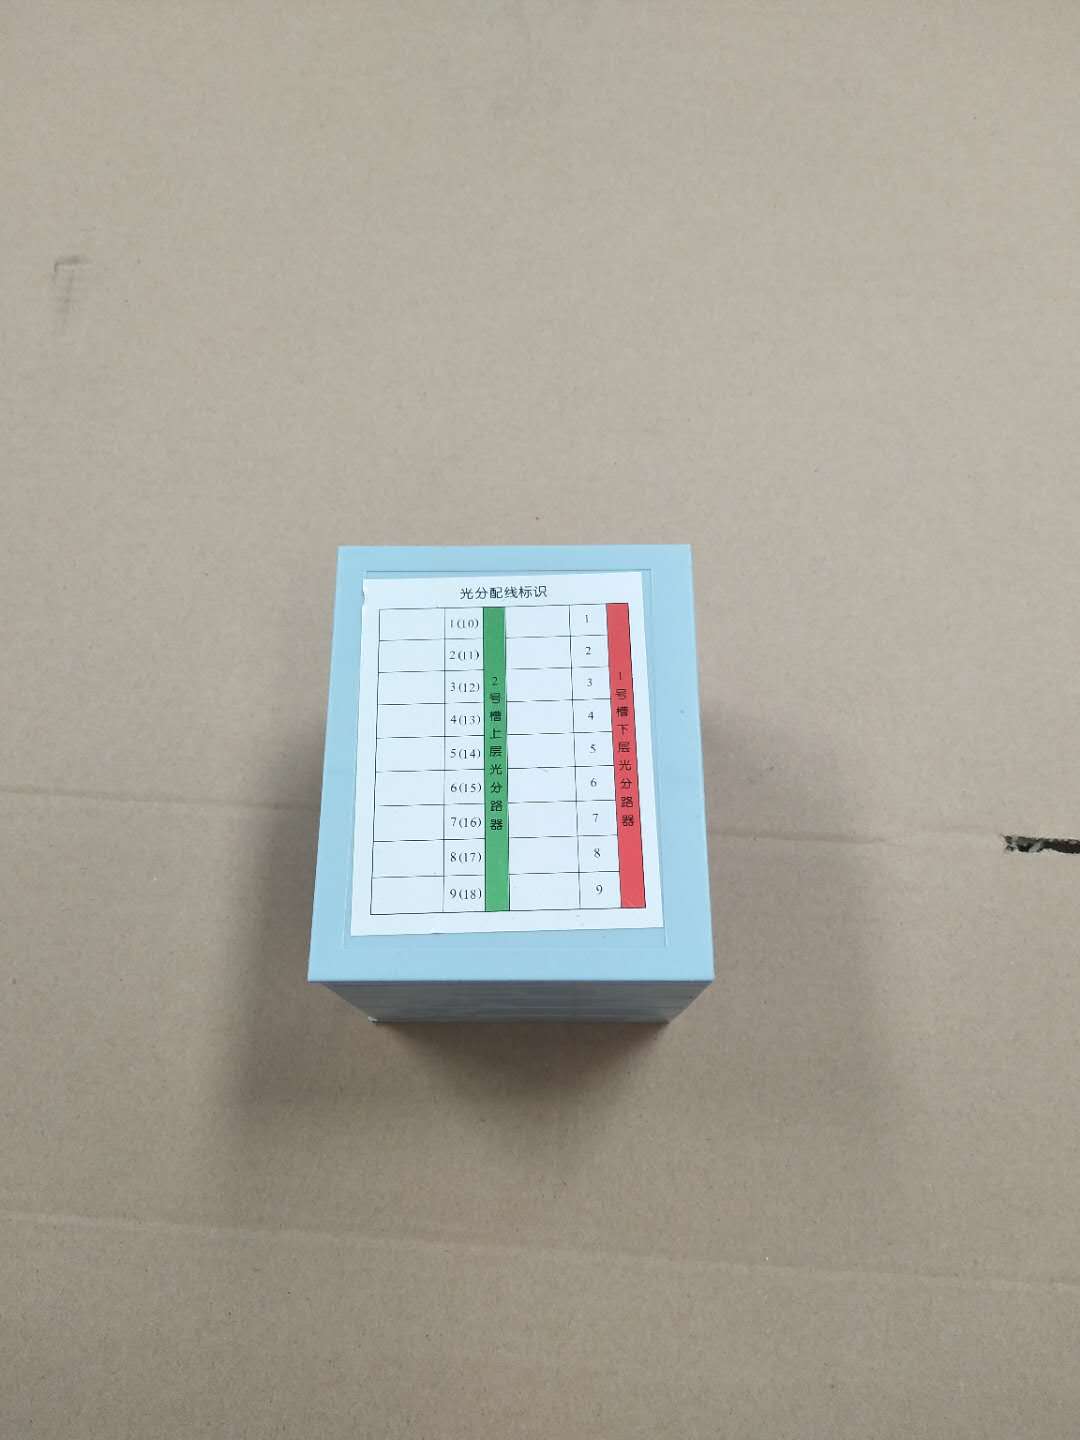 1分32分光器卡槽插片式分路器槽位4槽框插片盒座卡座 32芯插片合